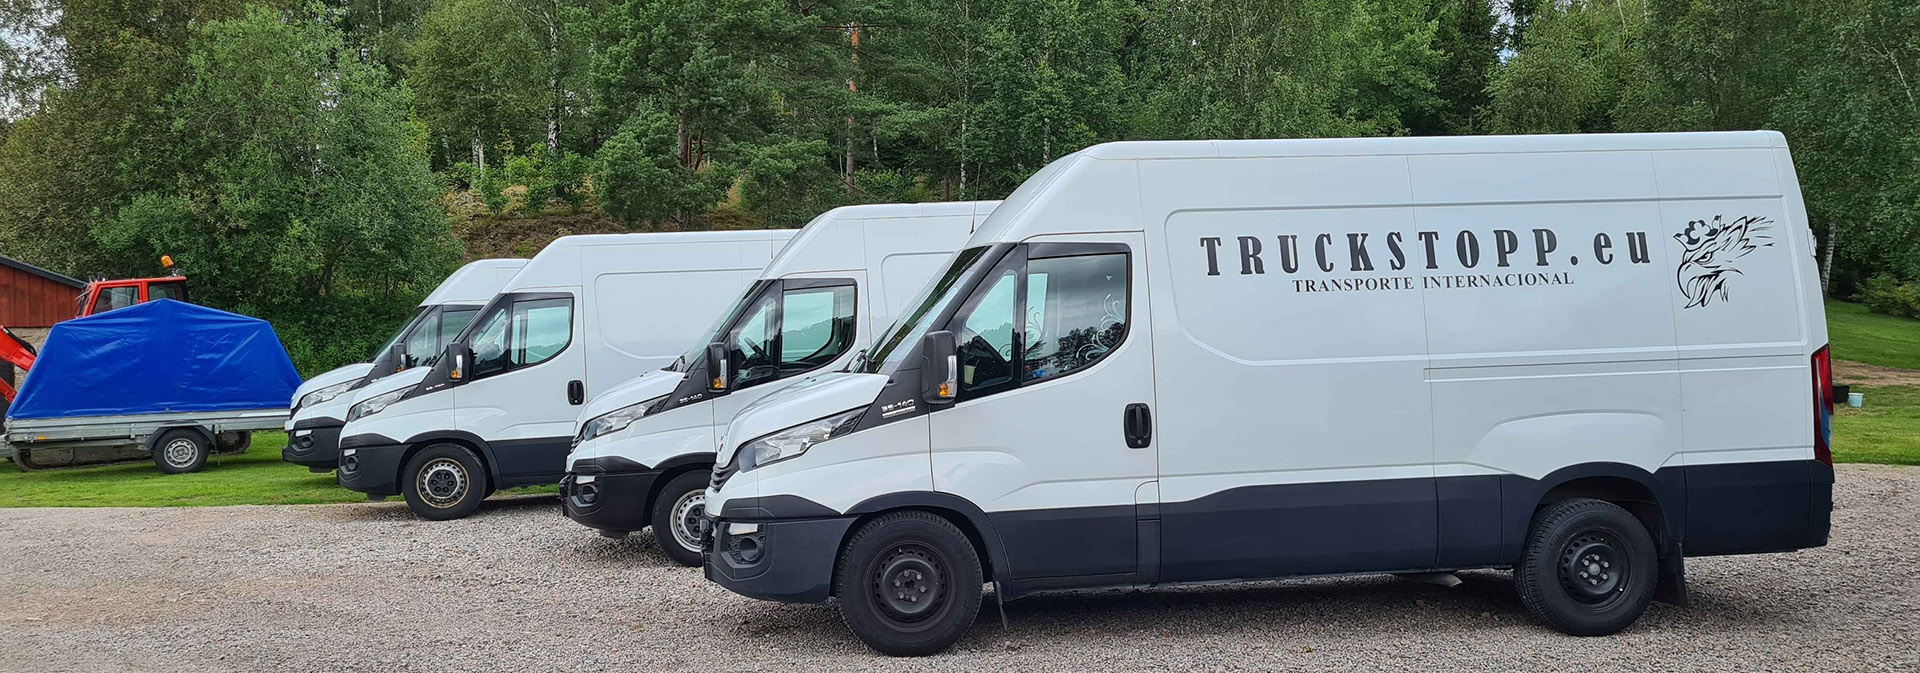 Flytt transport Spanien Sverige Truckstopp.eu